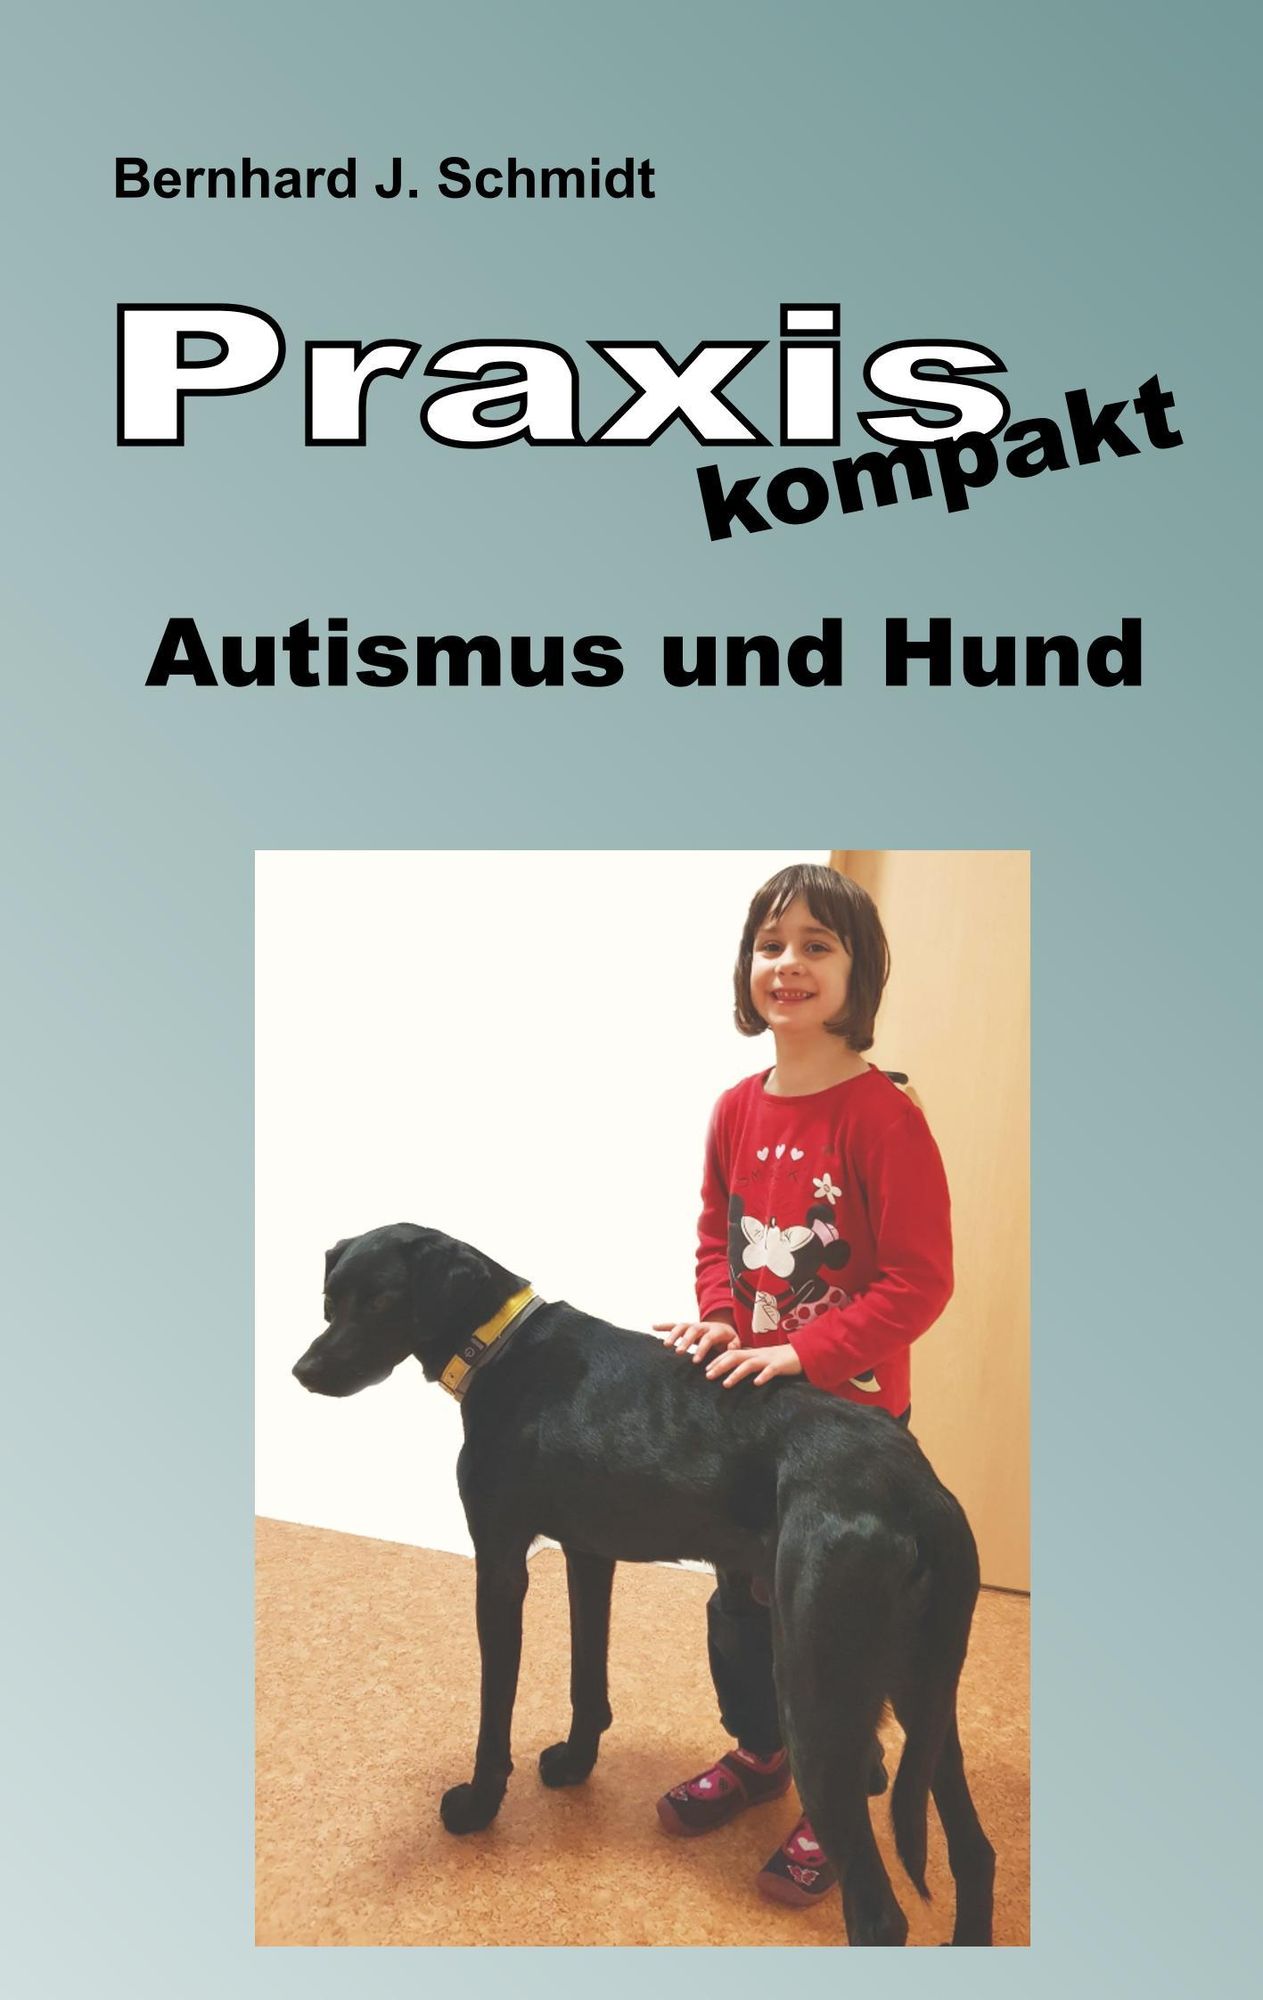 travl ødemark detekterbare Praxis kompakt: Autismus und Hund von Bernhard J. Schmidt - Buch | Thalia